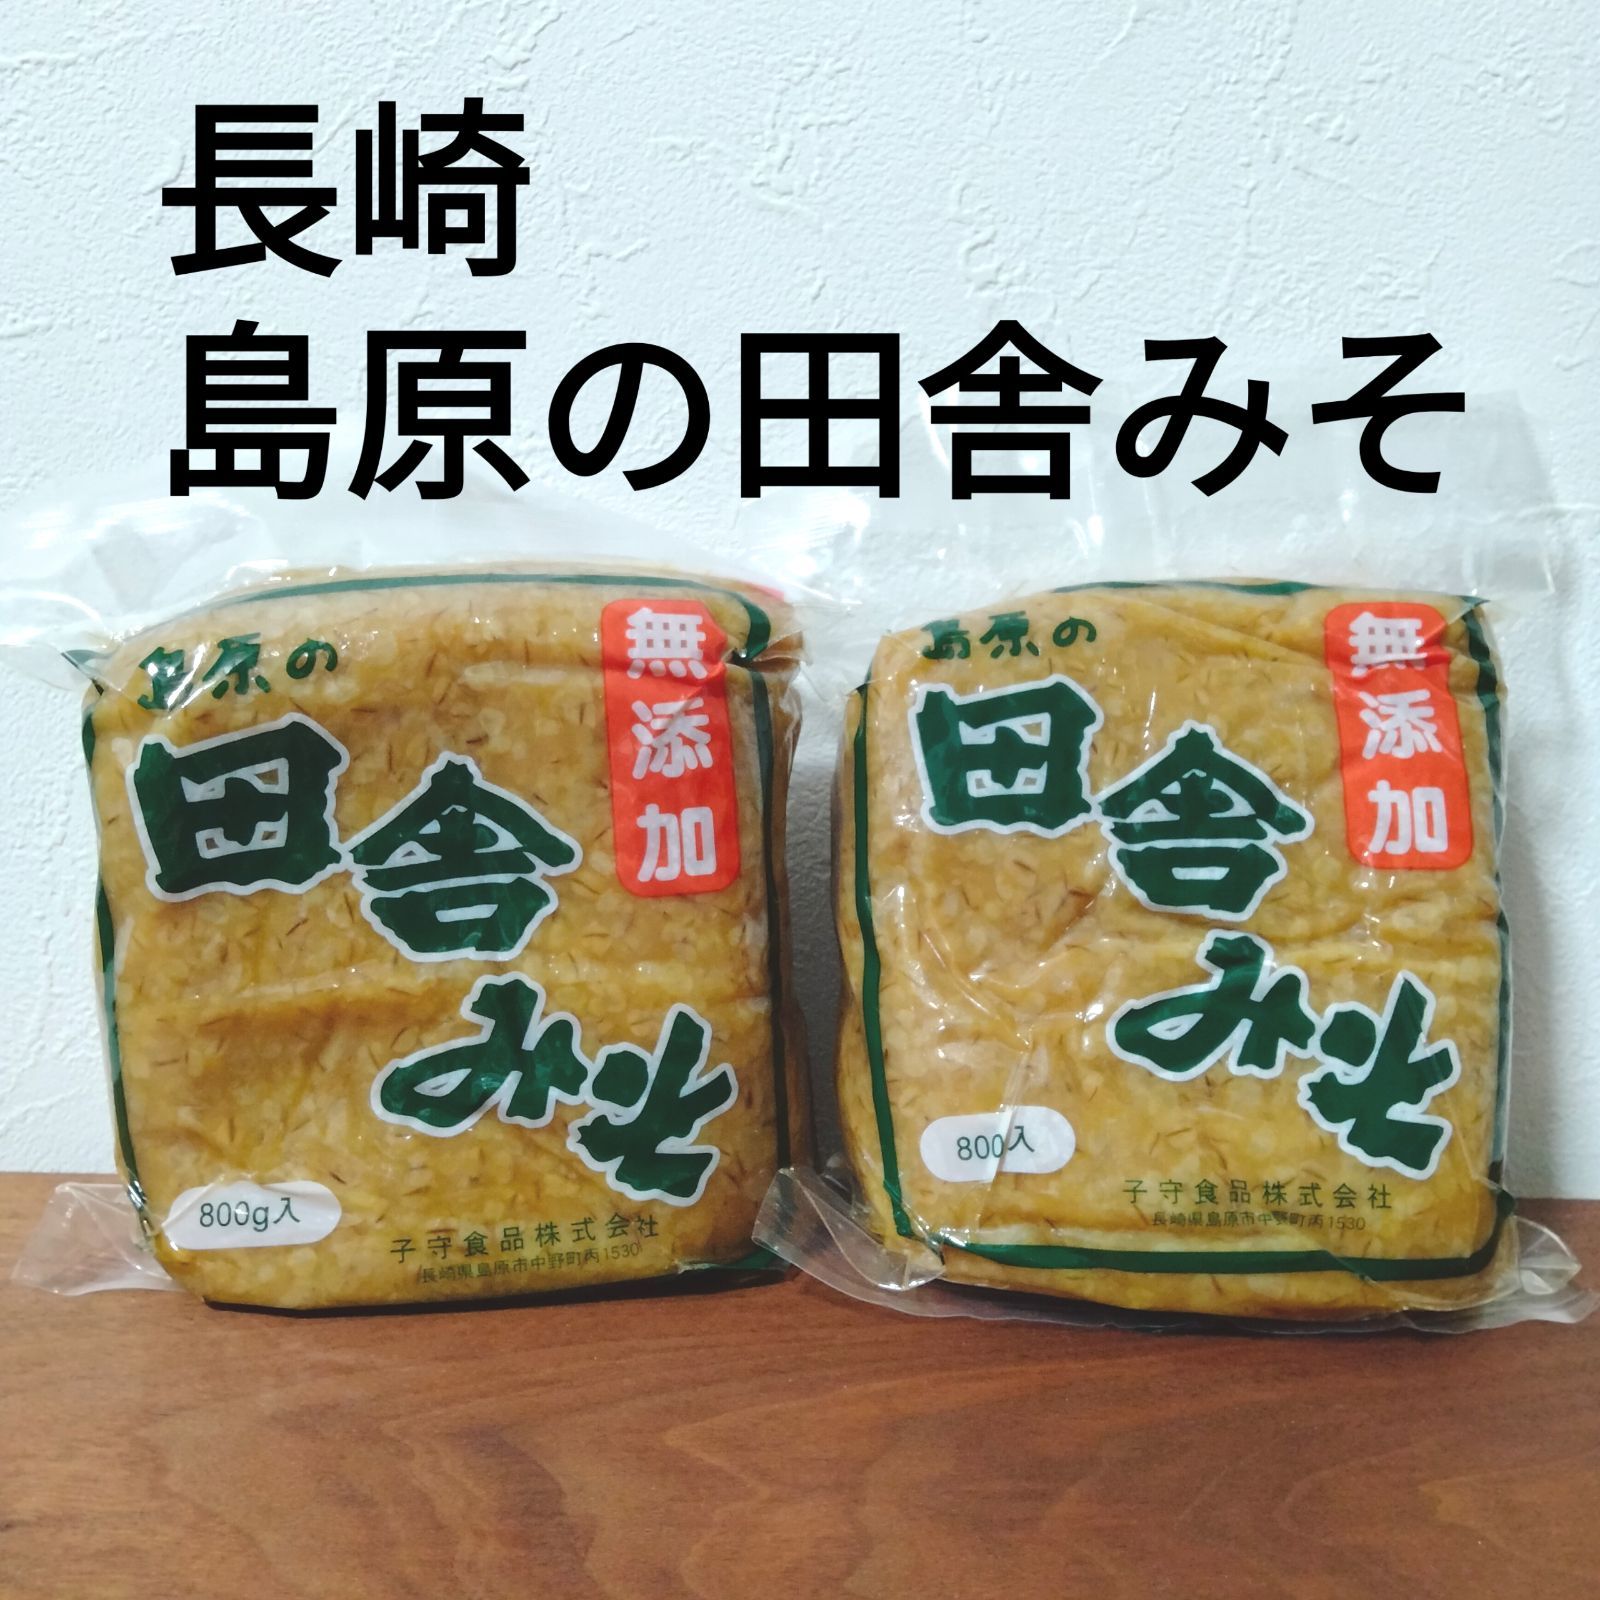 ◆島原 子守みそ(麦味噌)◆ 2個◆長崎故郷の味★田舎味噌